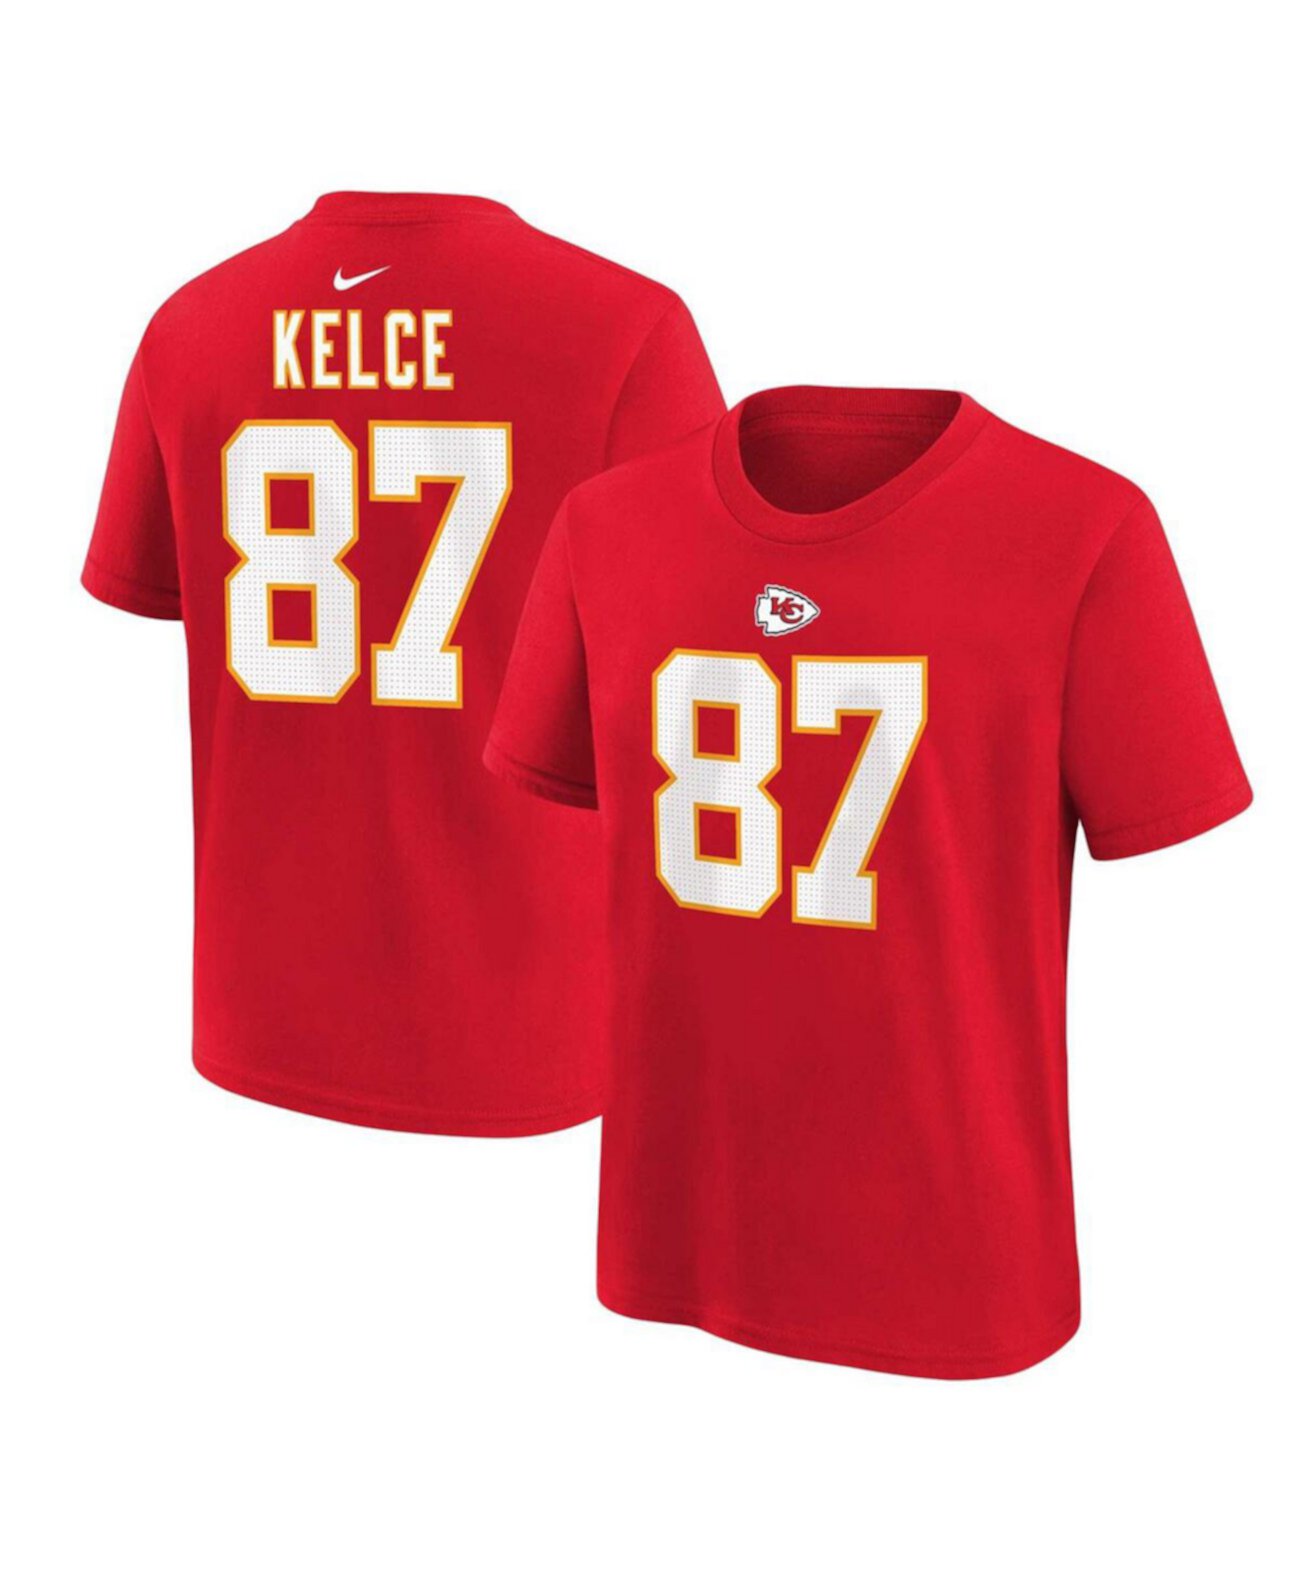 Красная футболка Little Boys and Girls Travis Kelce Kansas City Chiefs с именем и номером игрока Nike